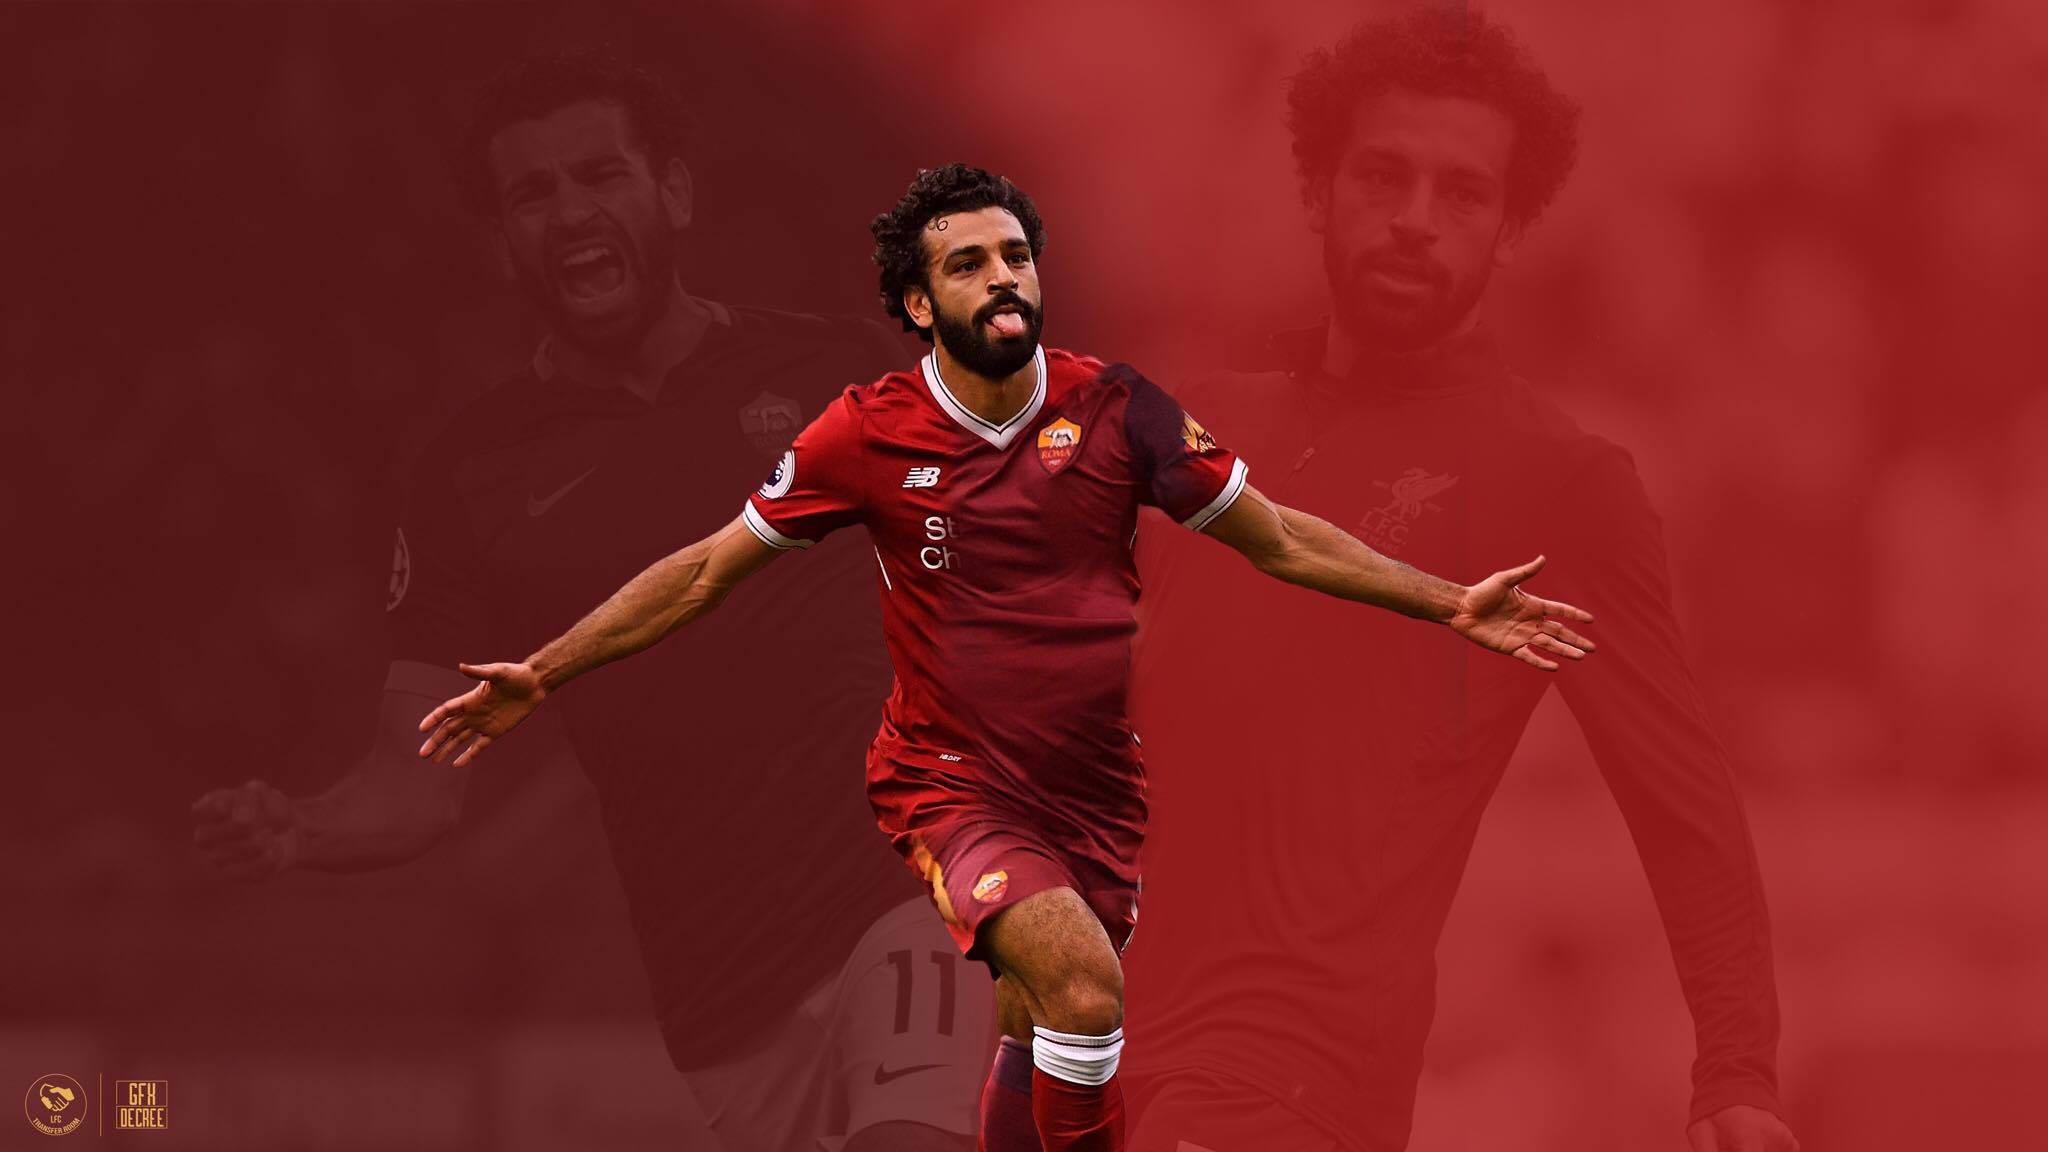 Descarga gratuita de fondo de pantalla para móvil de Deporte, Mohamed Salah.